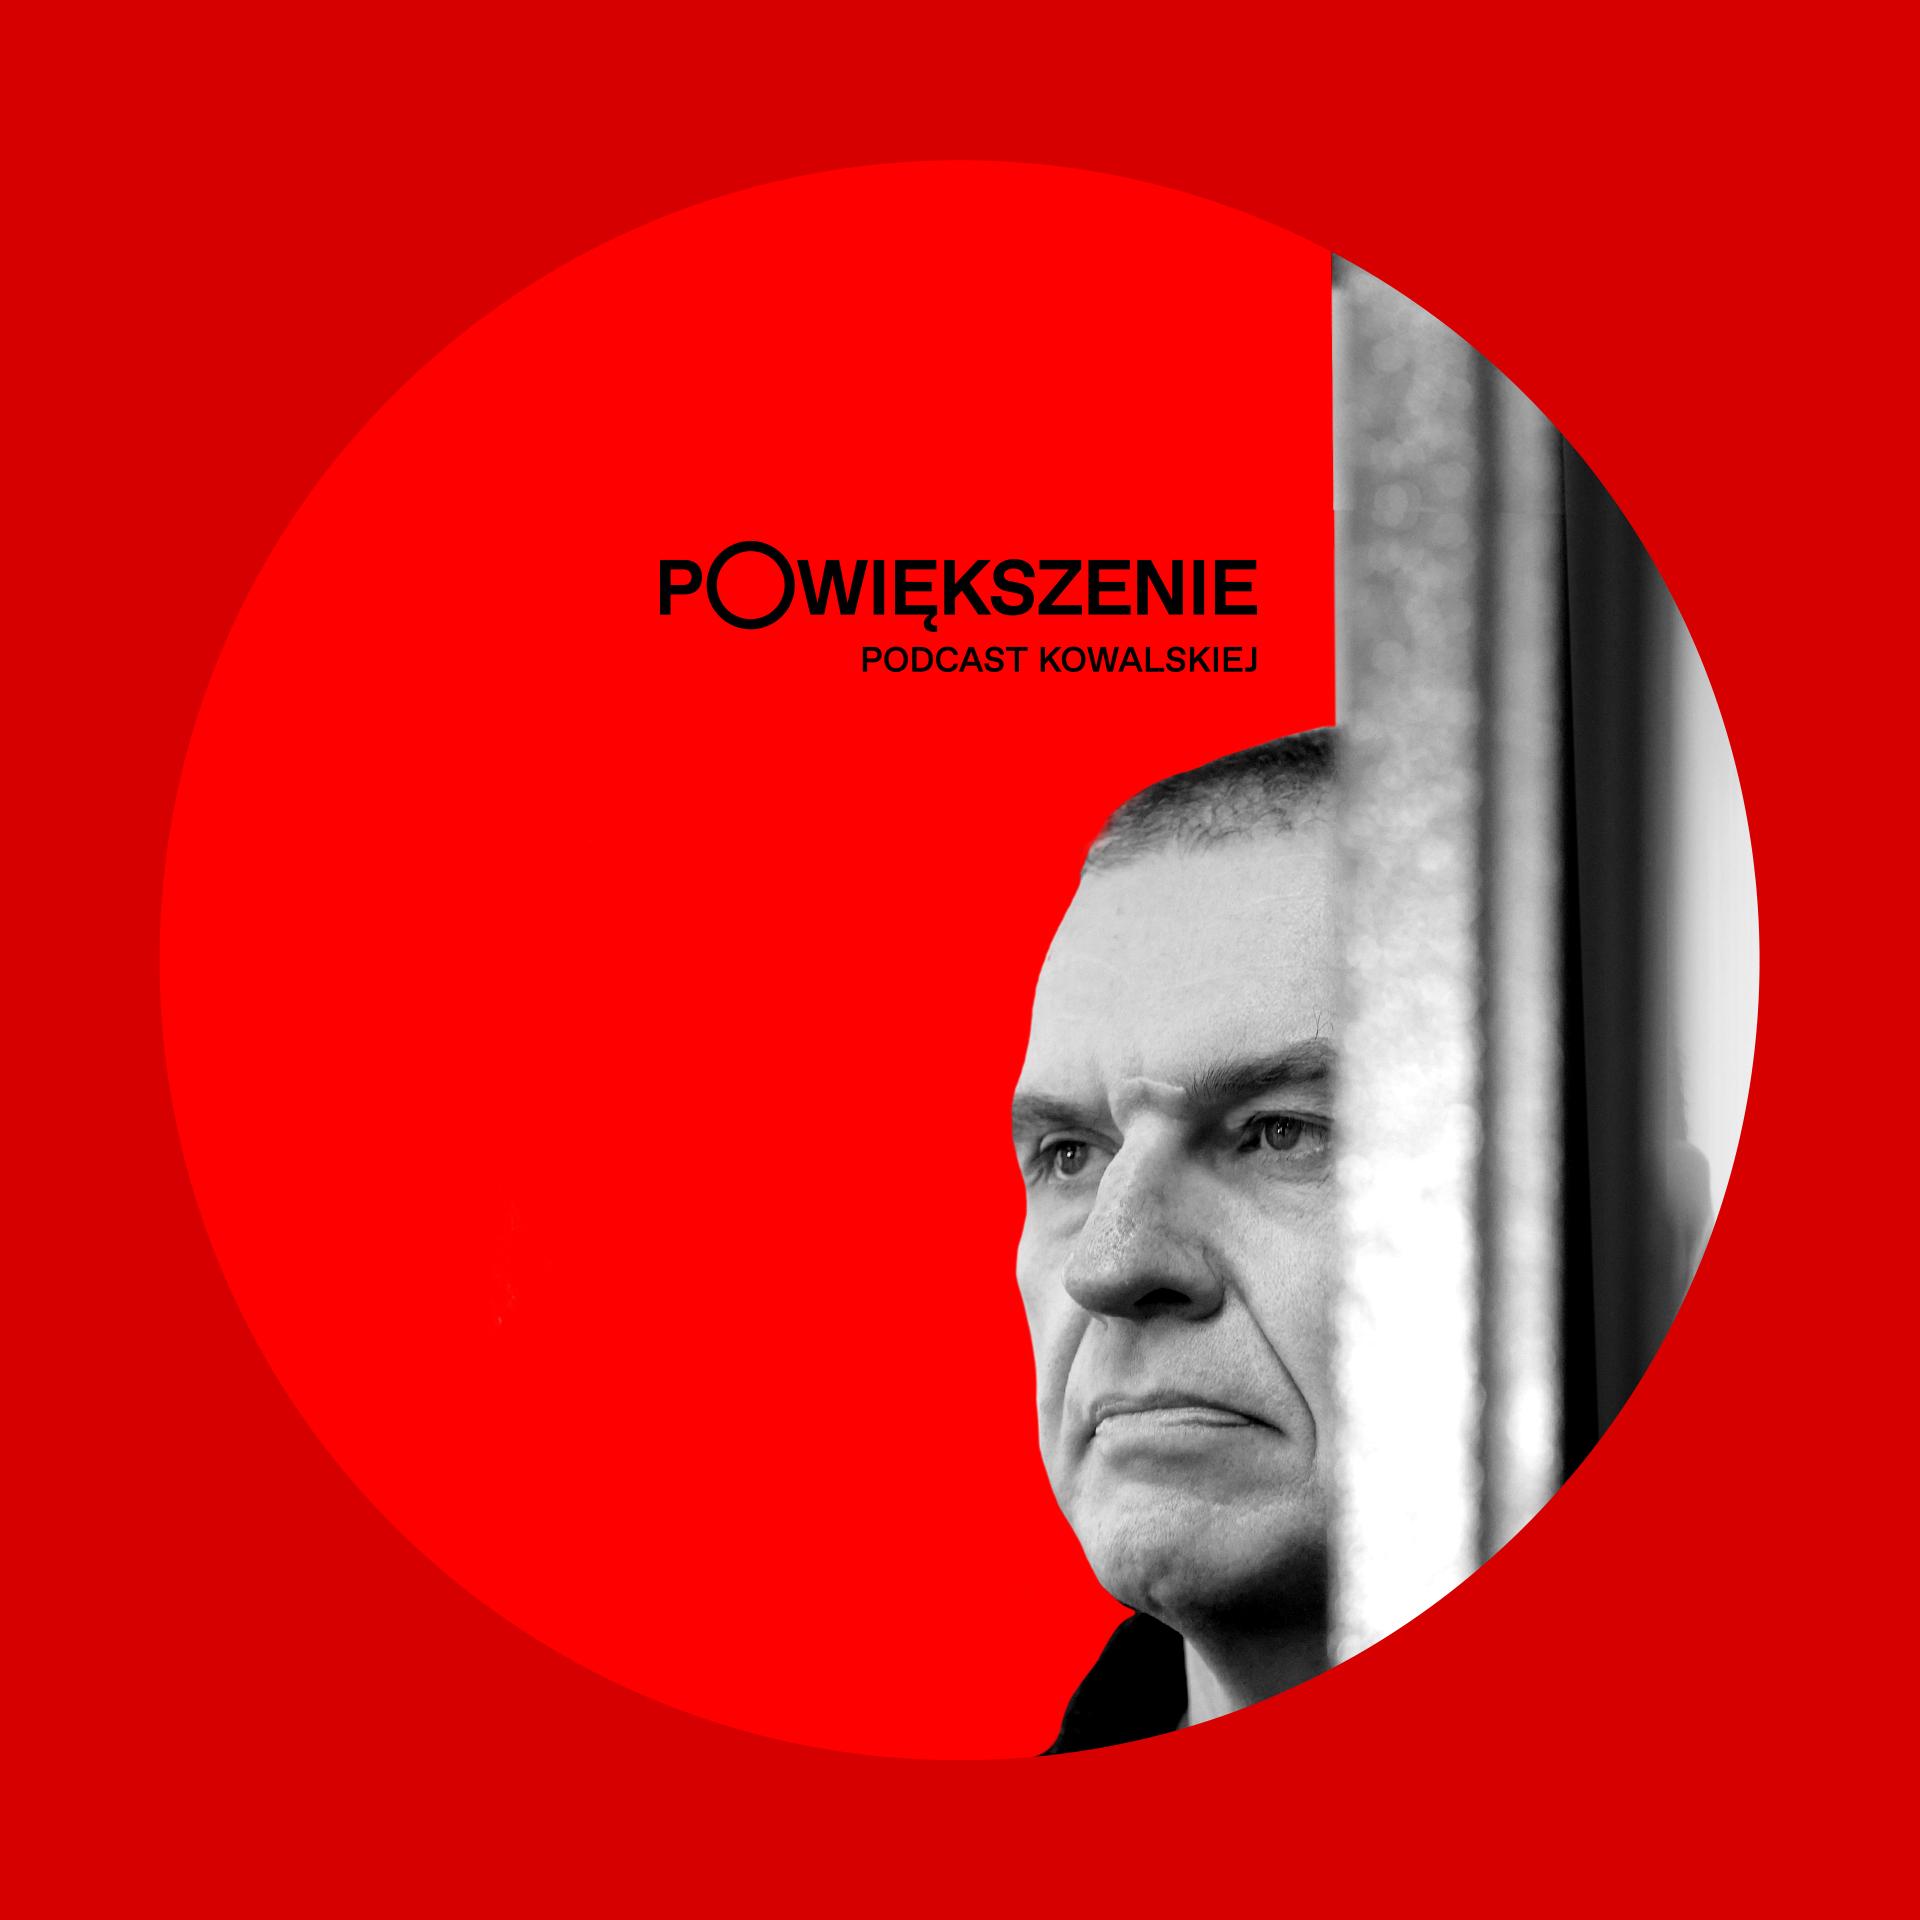 Podcast Powiększenie. Portret Andrzeja Poczobuta na czerwonym tle